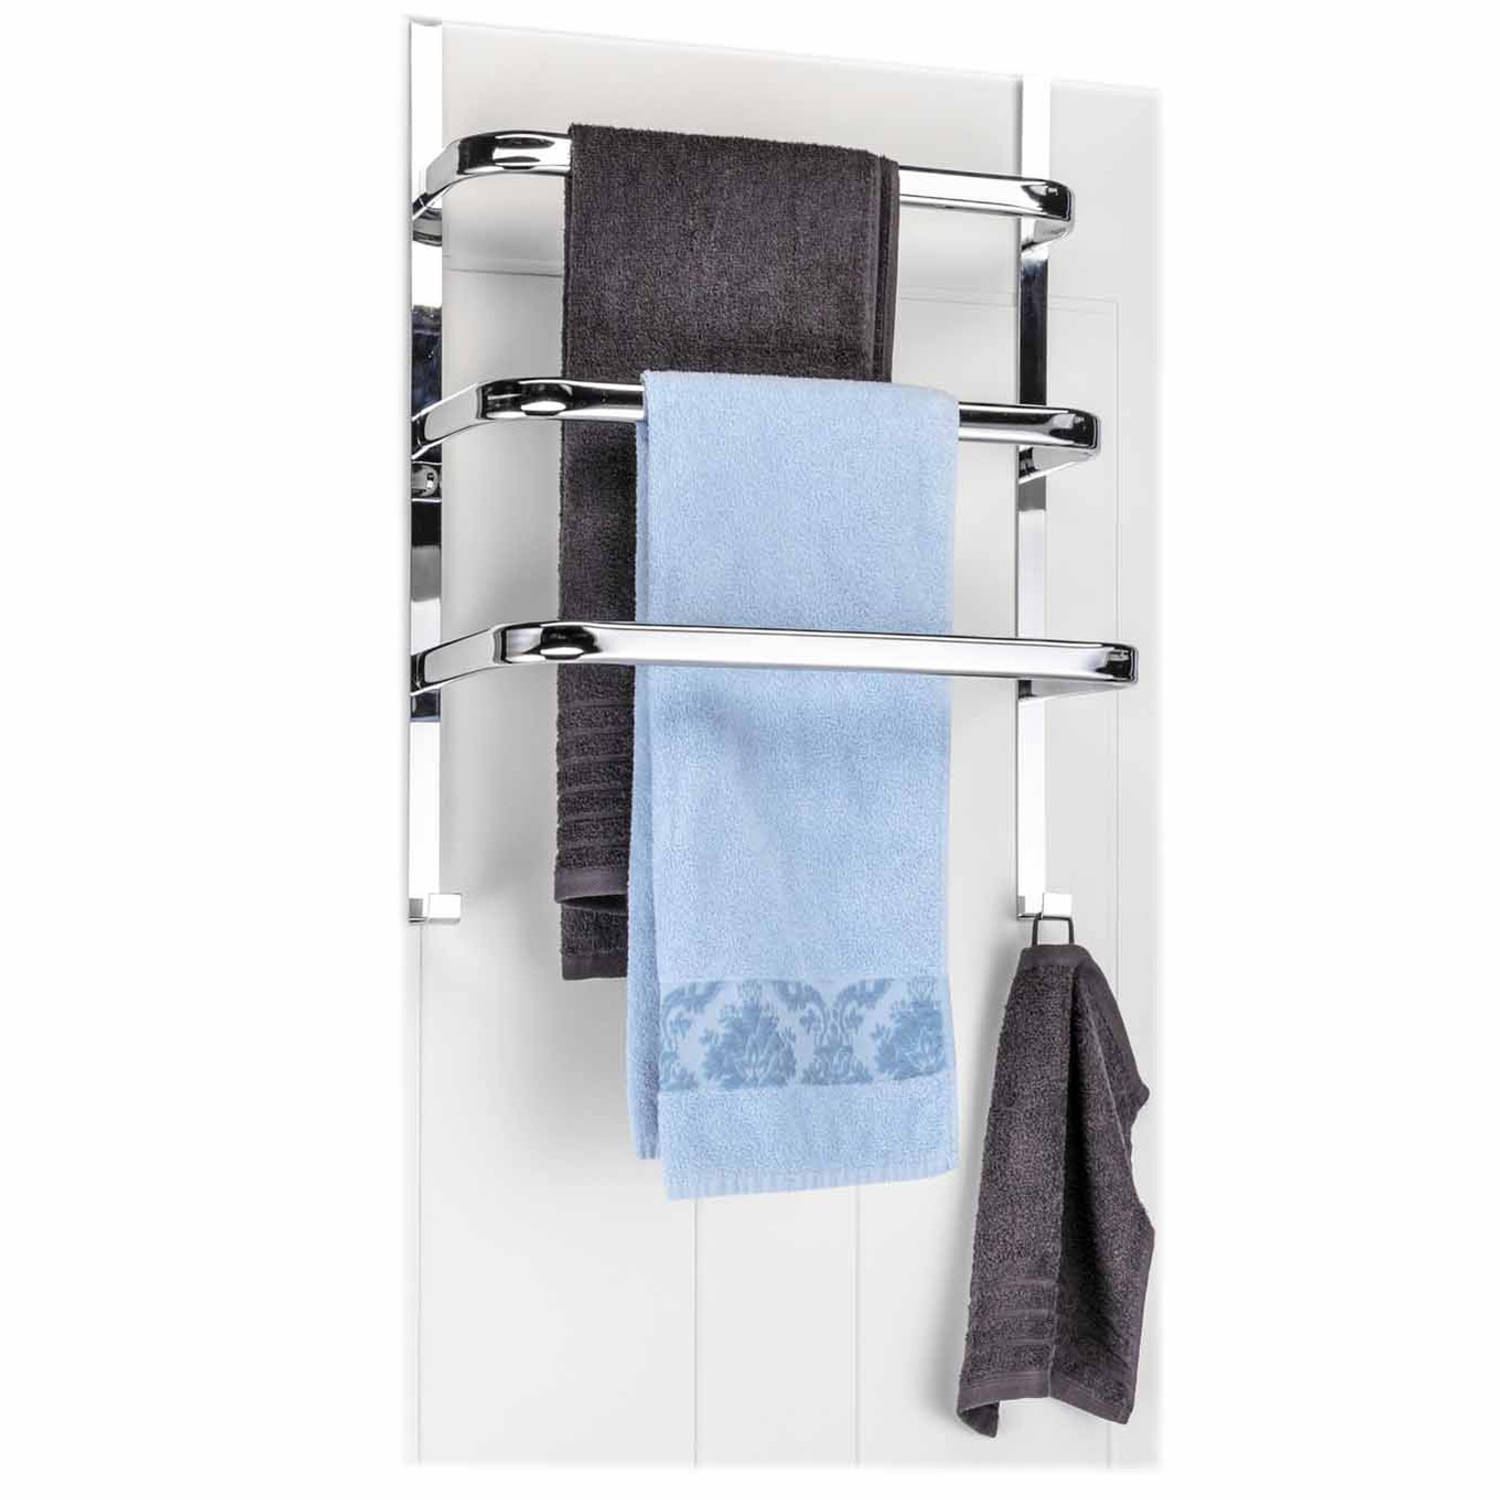 parallel Nieuwe aankomst sponsor Handdoek deur rek met 3 stangen verchroomd 56 cm - Handdoekrekken | Blokker